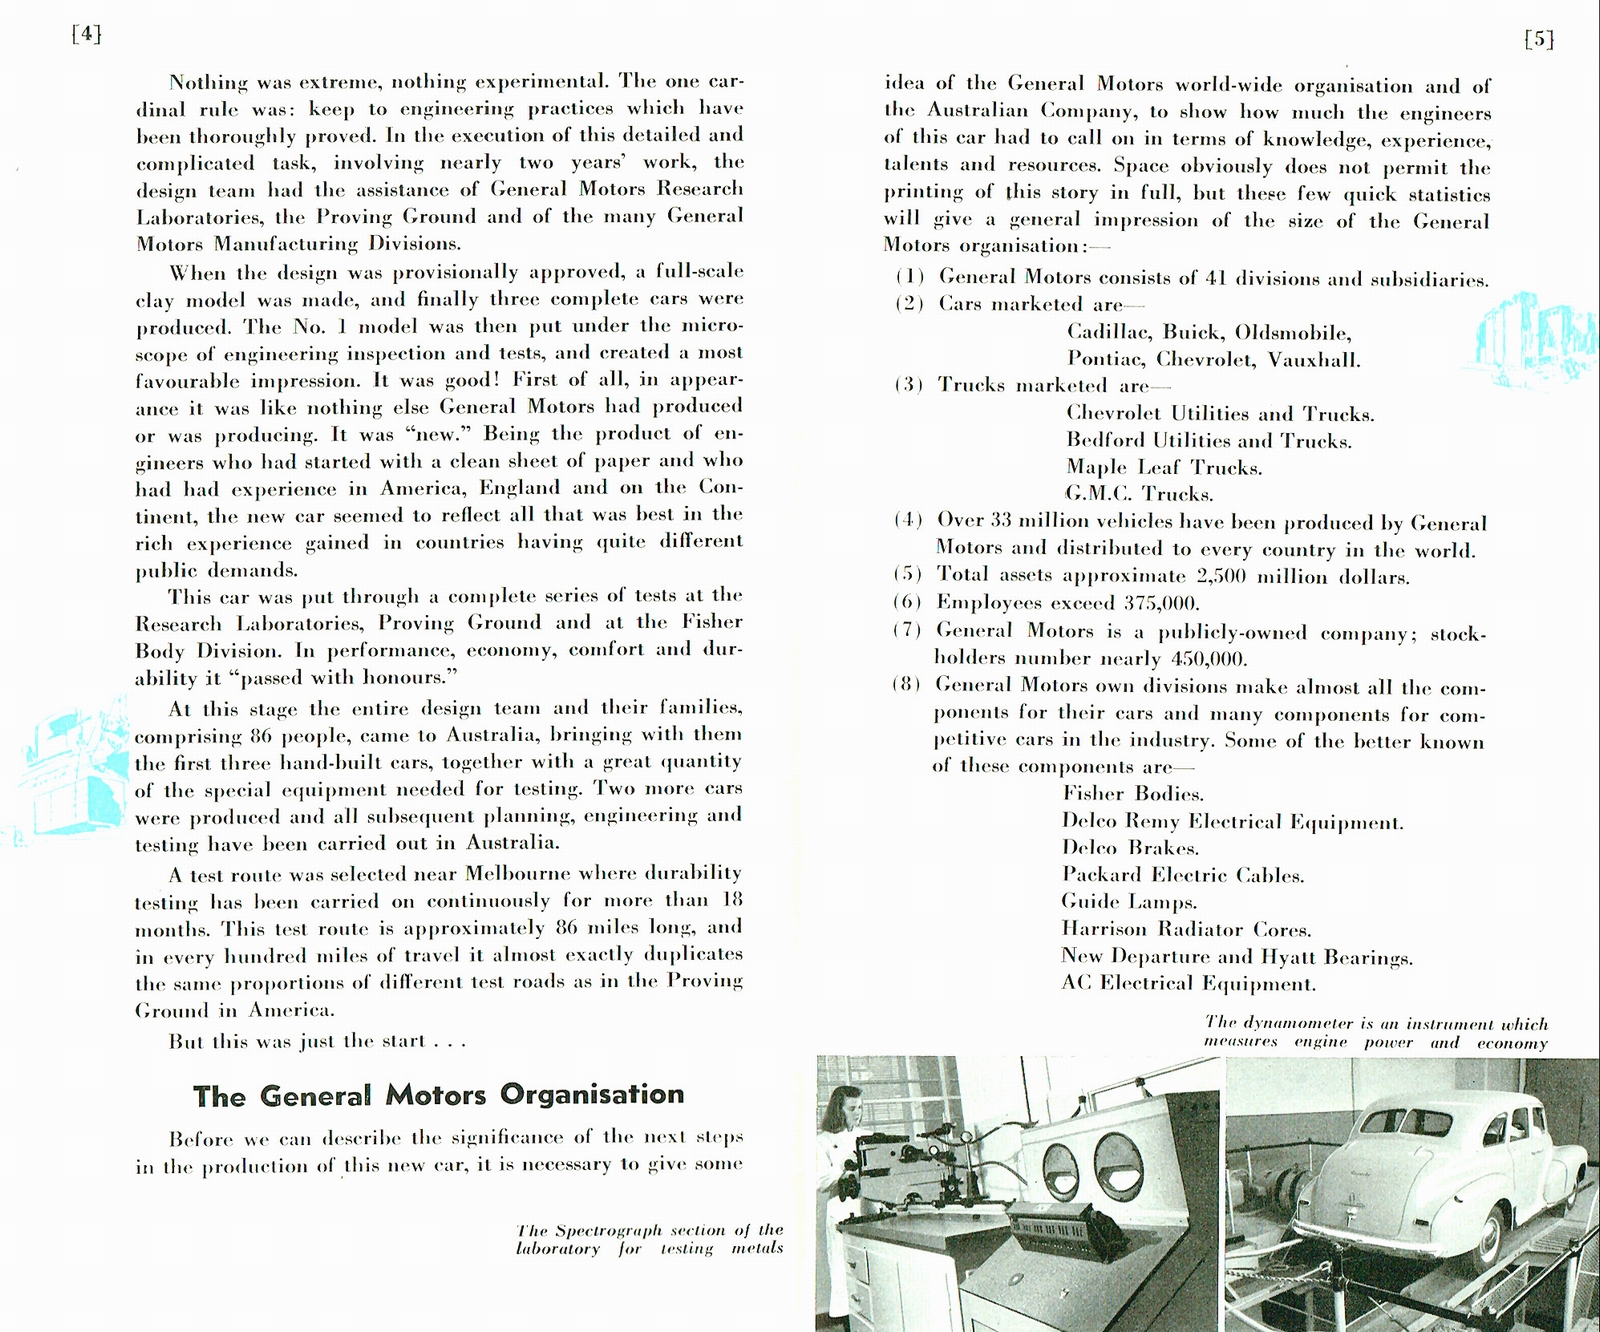 n_1948 Holden Booklet-04-05.jpg